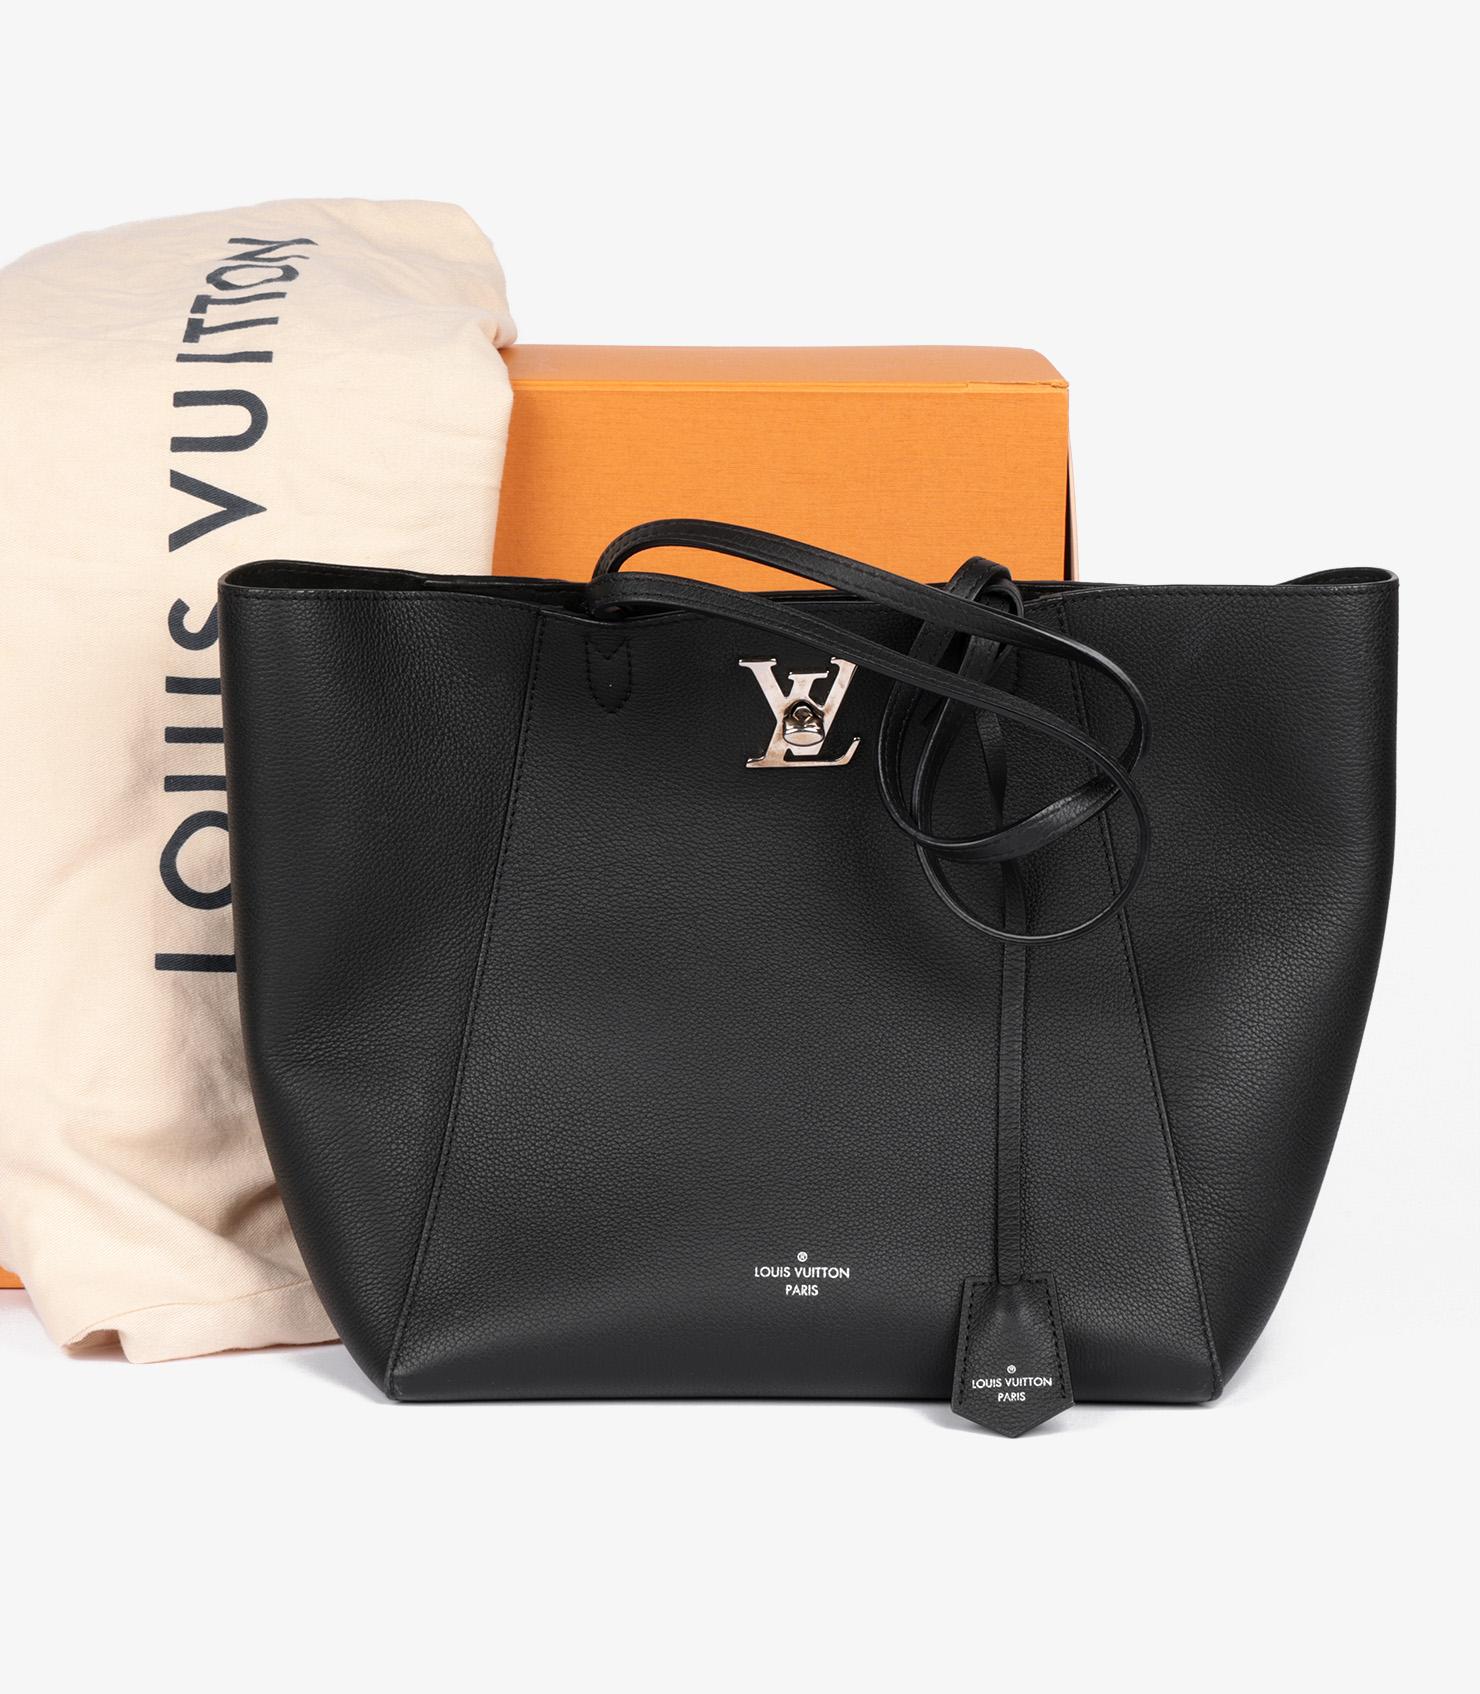 Louis Vuitton Black Grained Calfskin Leather Lockme Shopper Bag For Sale 7